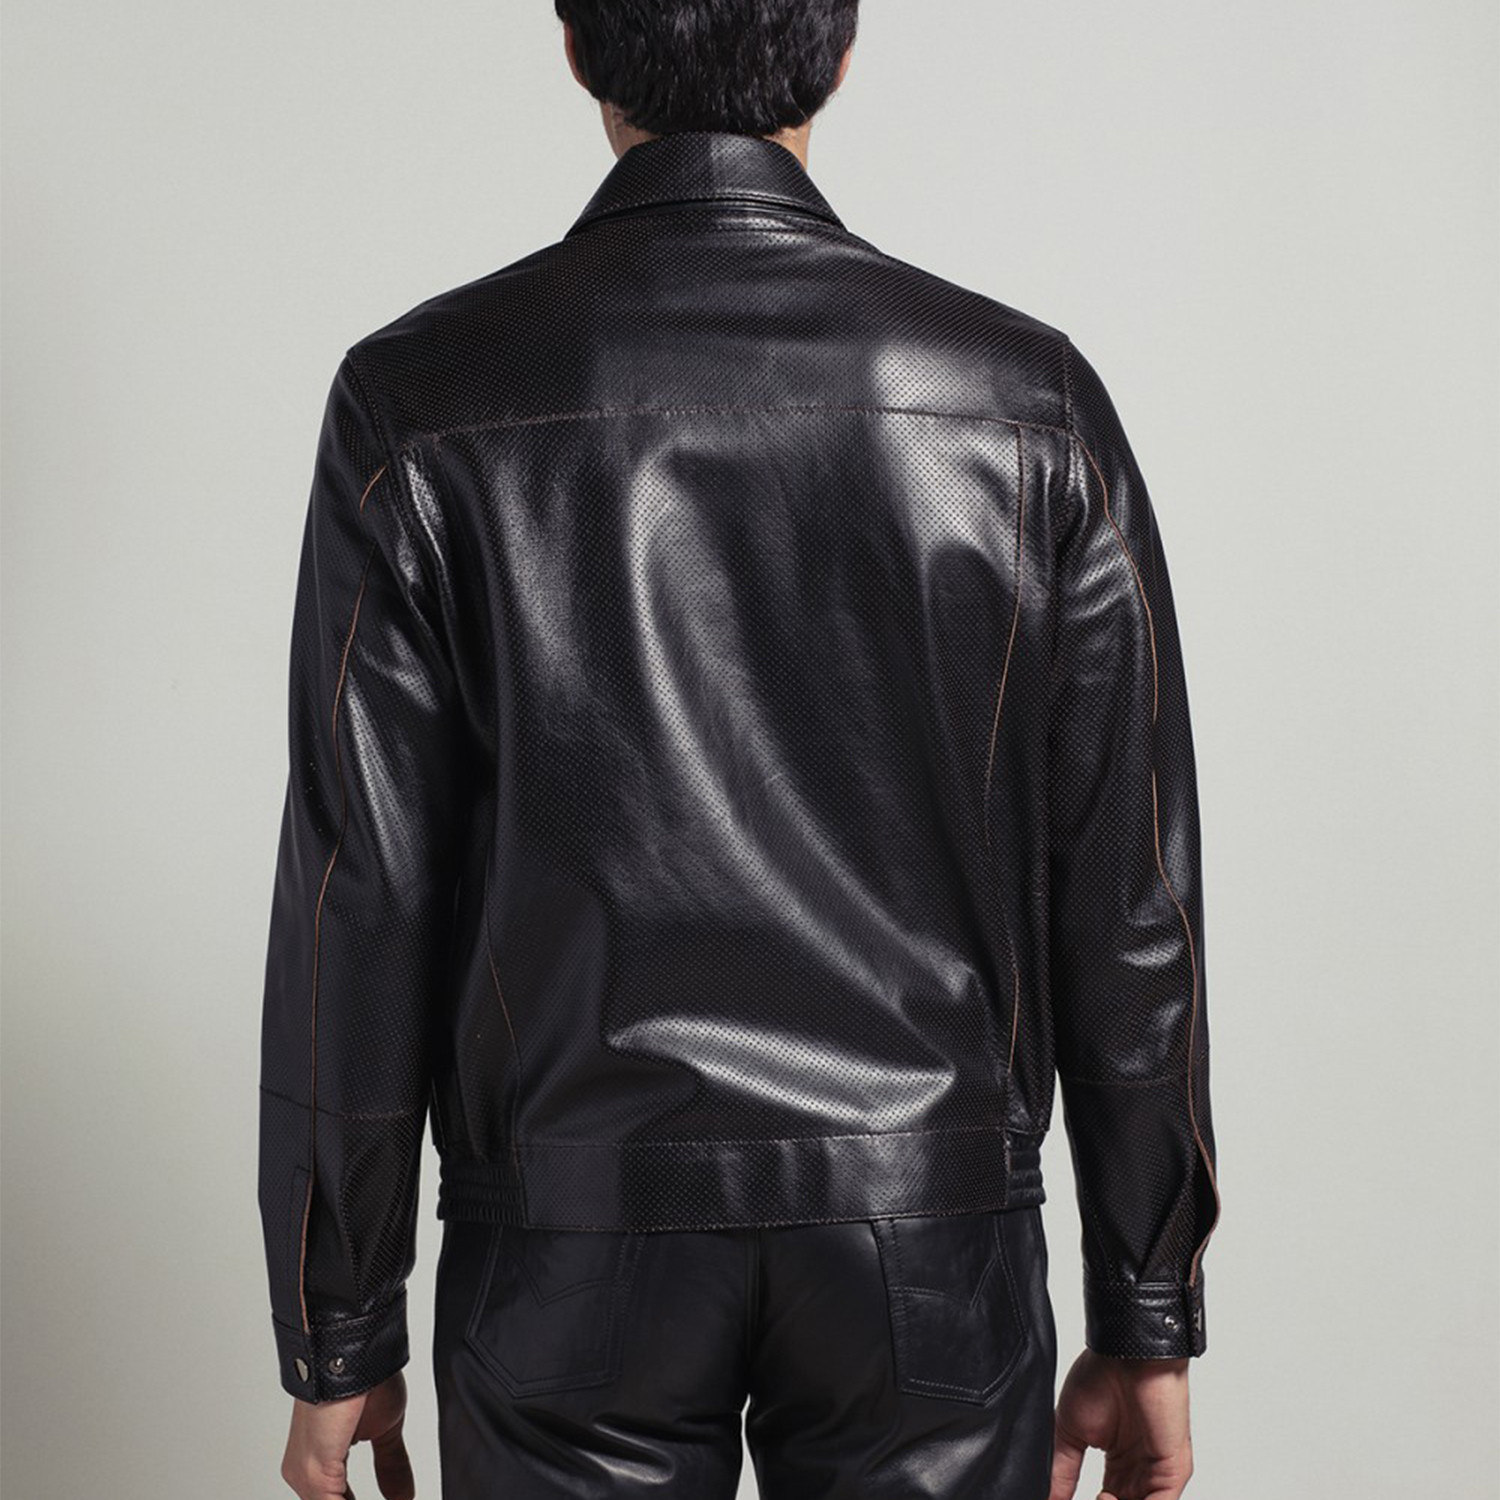 Jax Leather Jacket // Black (Euro: 48) - Deriderim - Touch of Modern